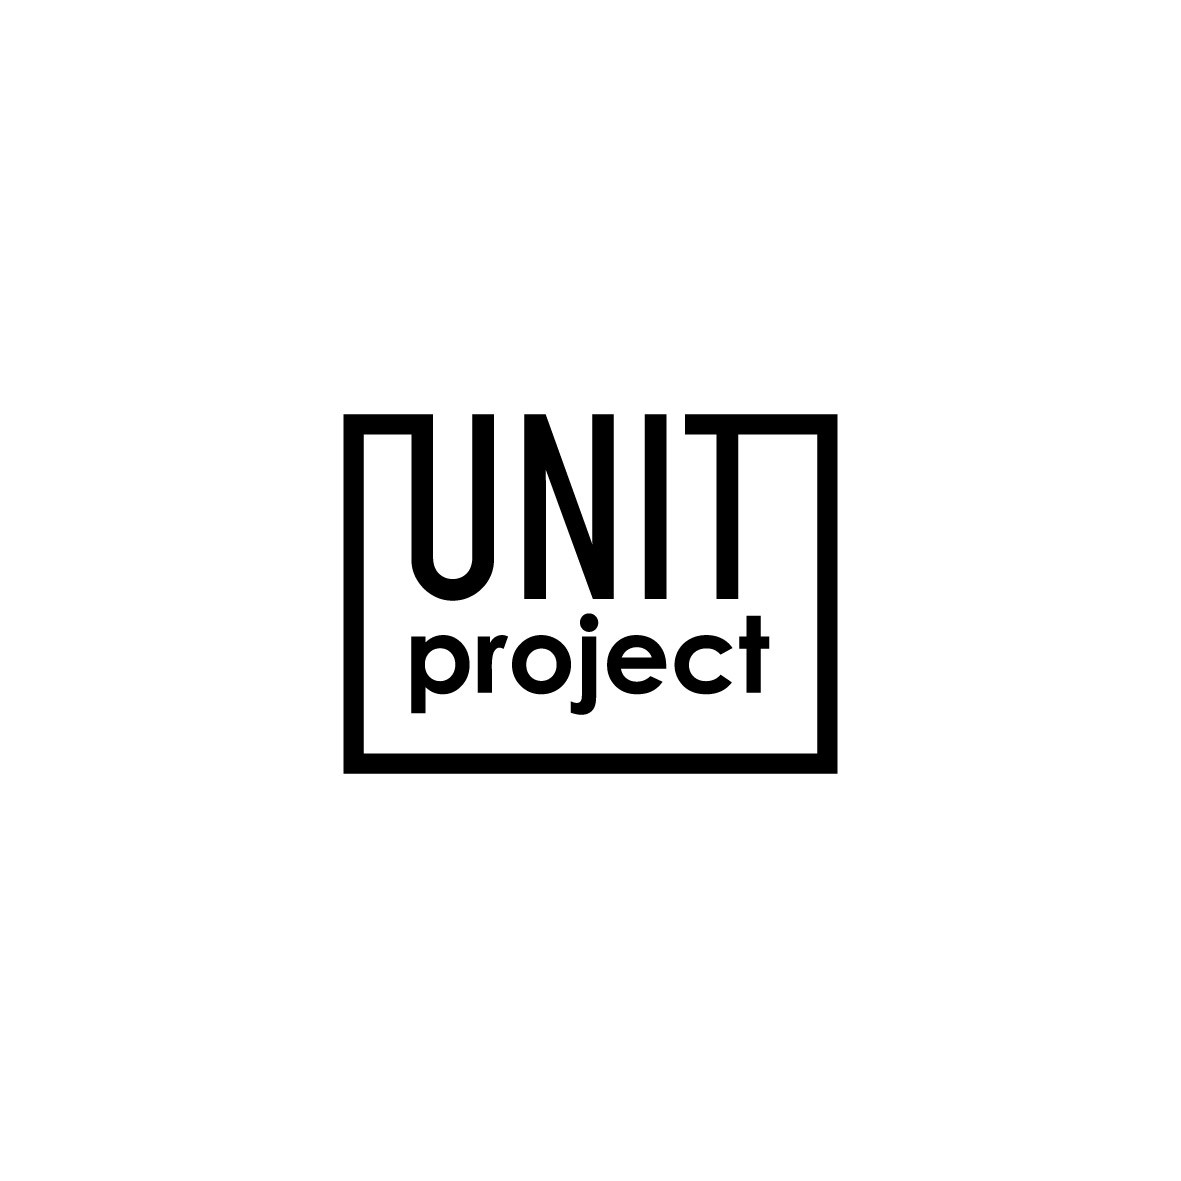 UNIT project